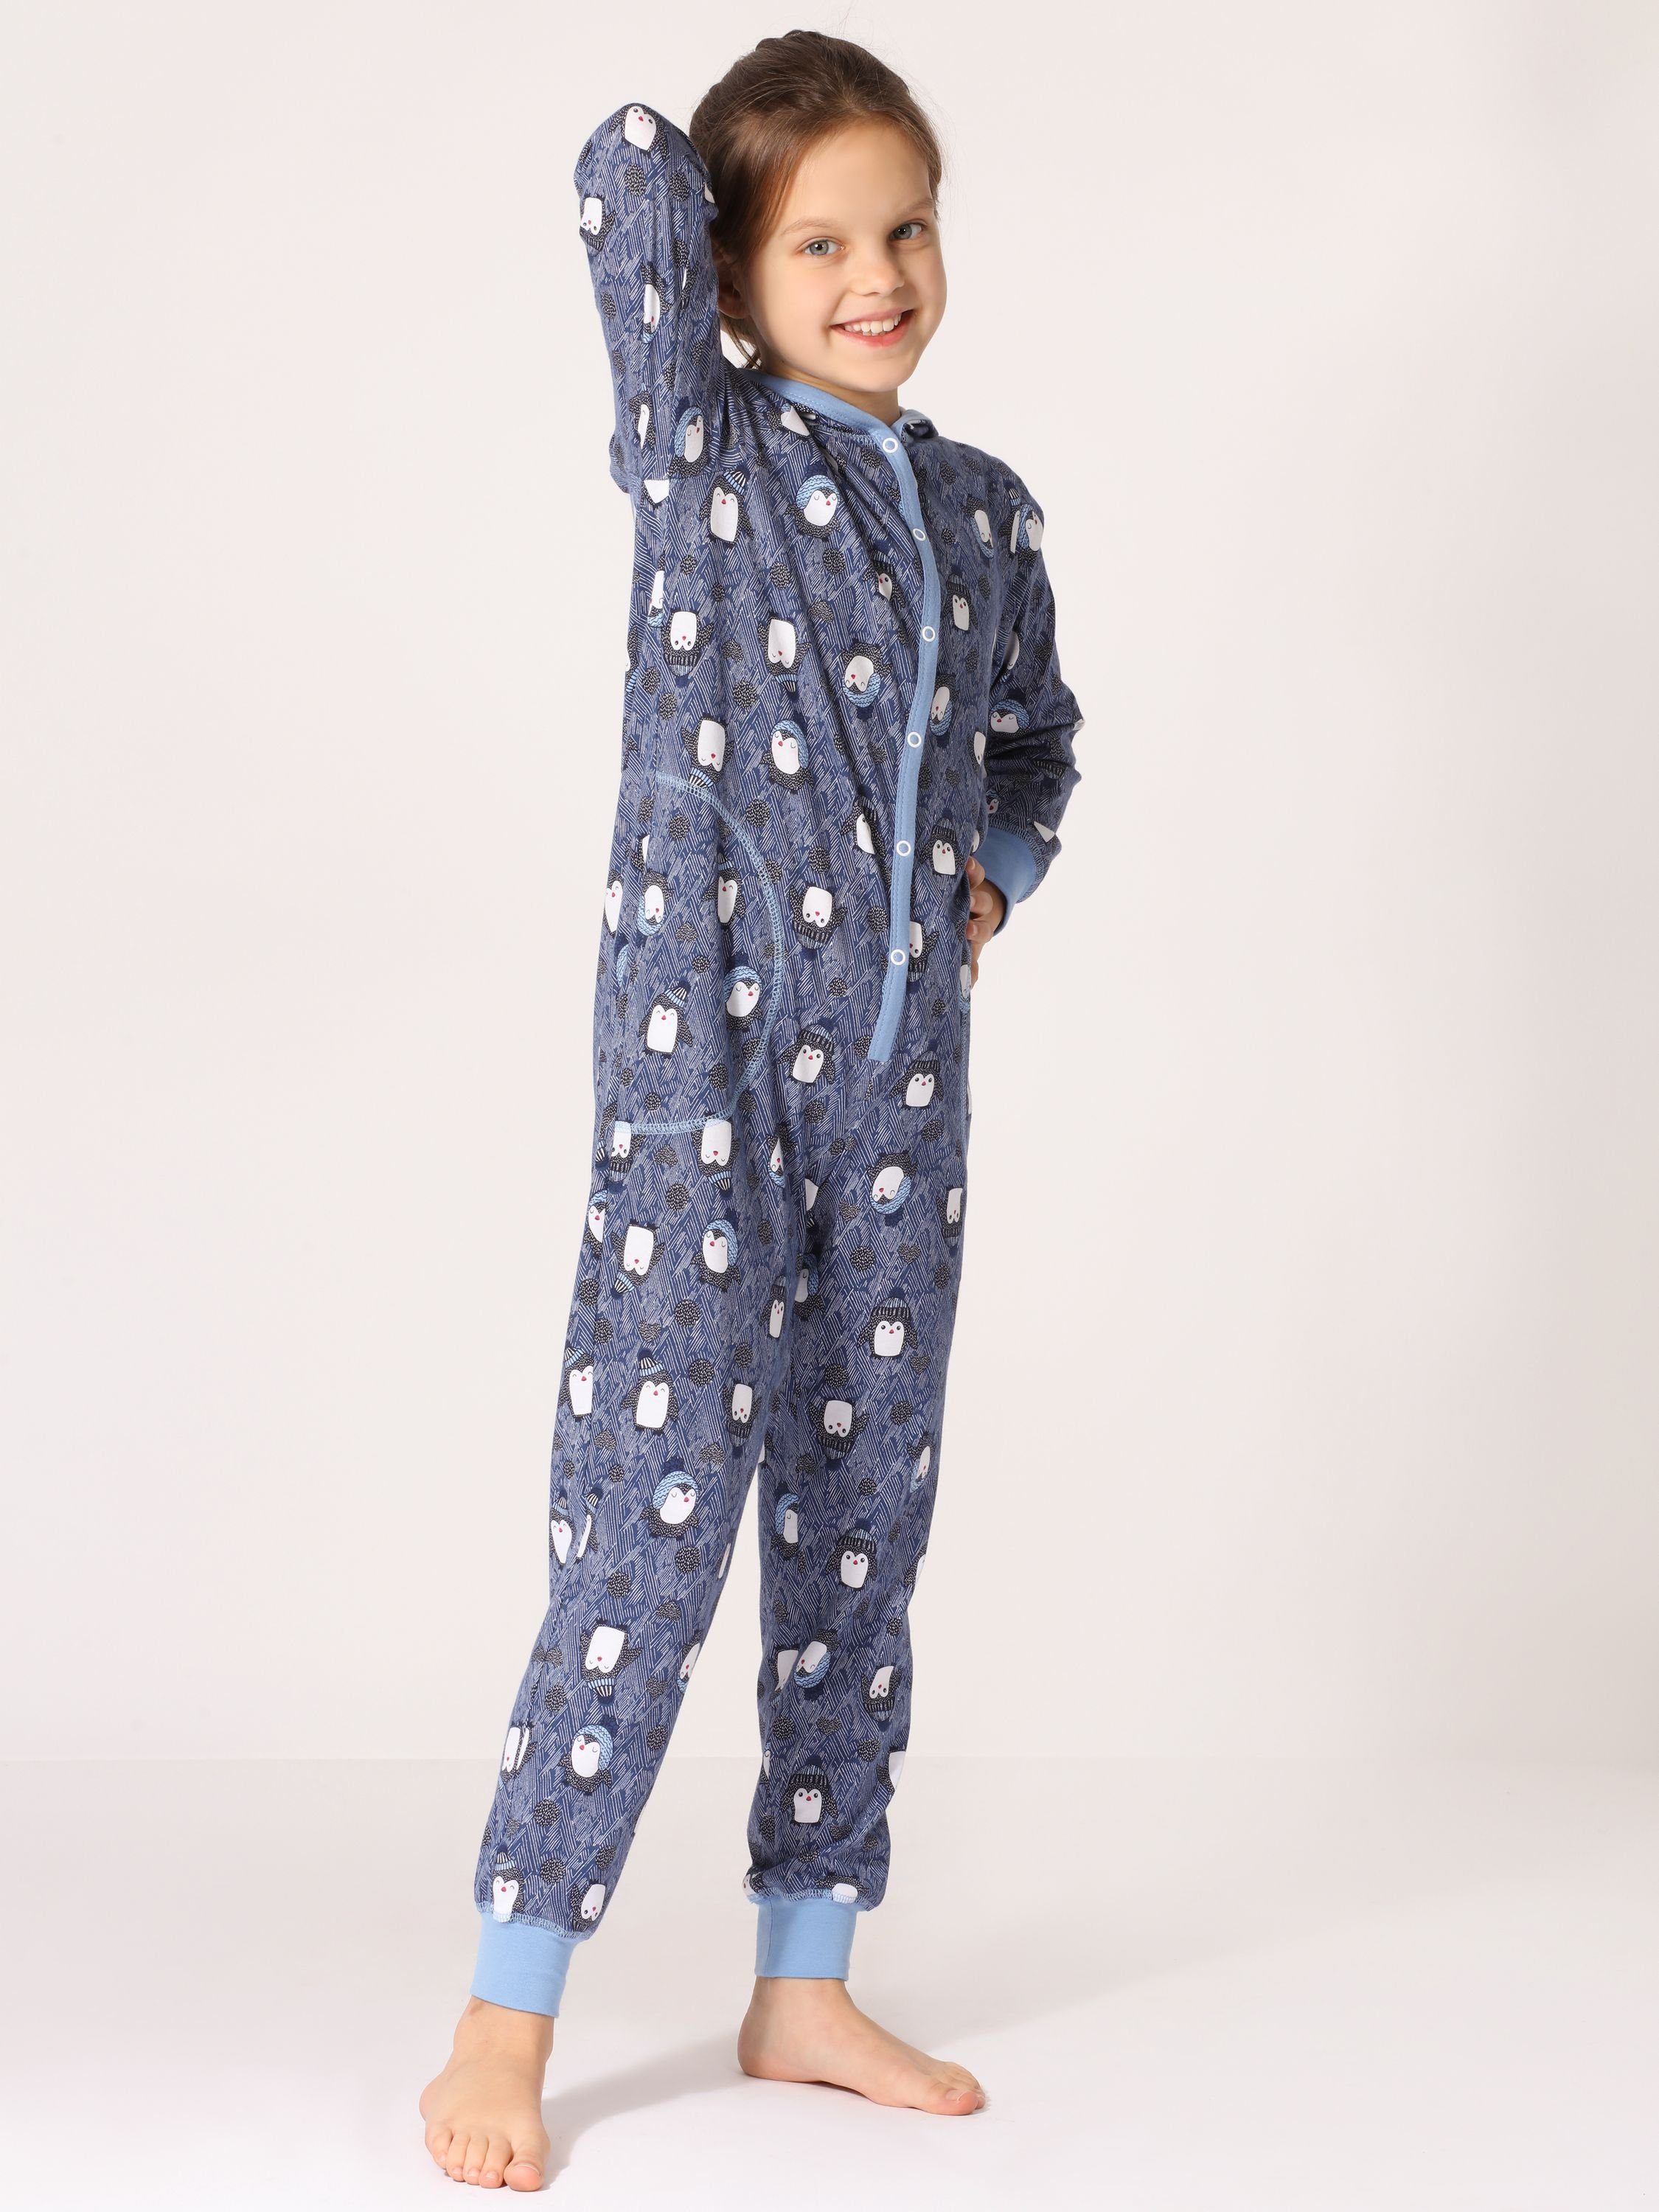 Blau MS10-223 Mädchen Style Kapuze Schlafoverall Merry Pinguine Schlafanzug mit